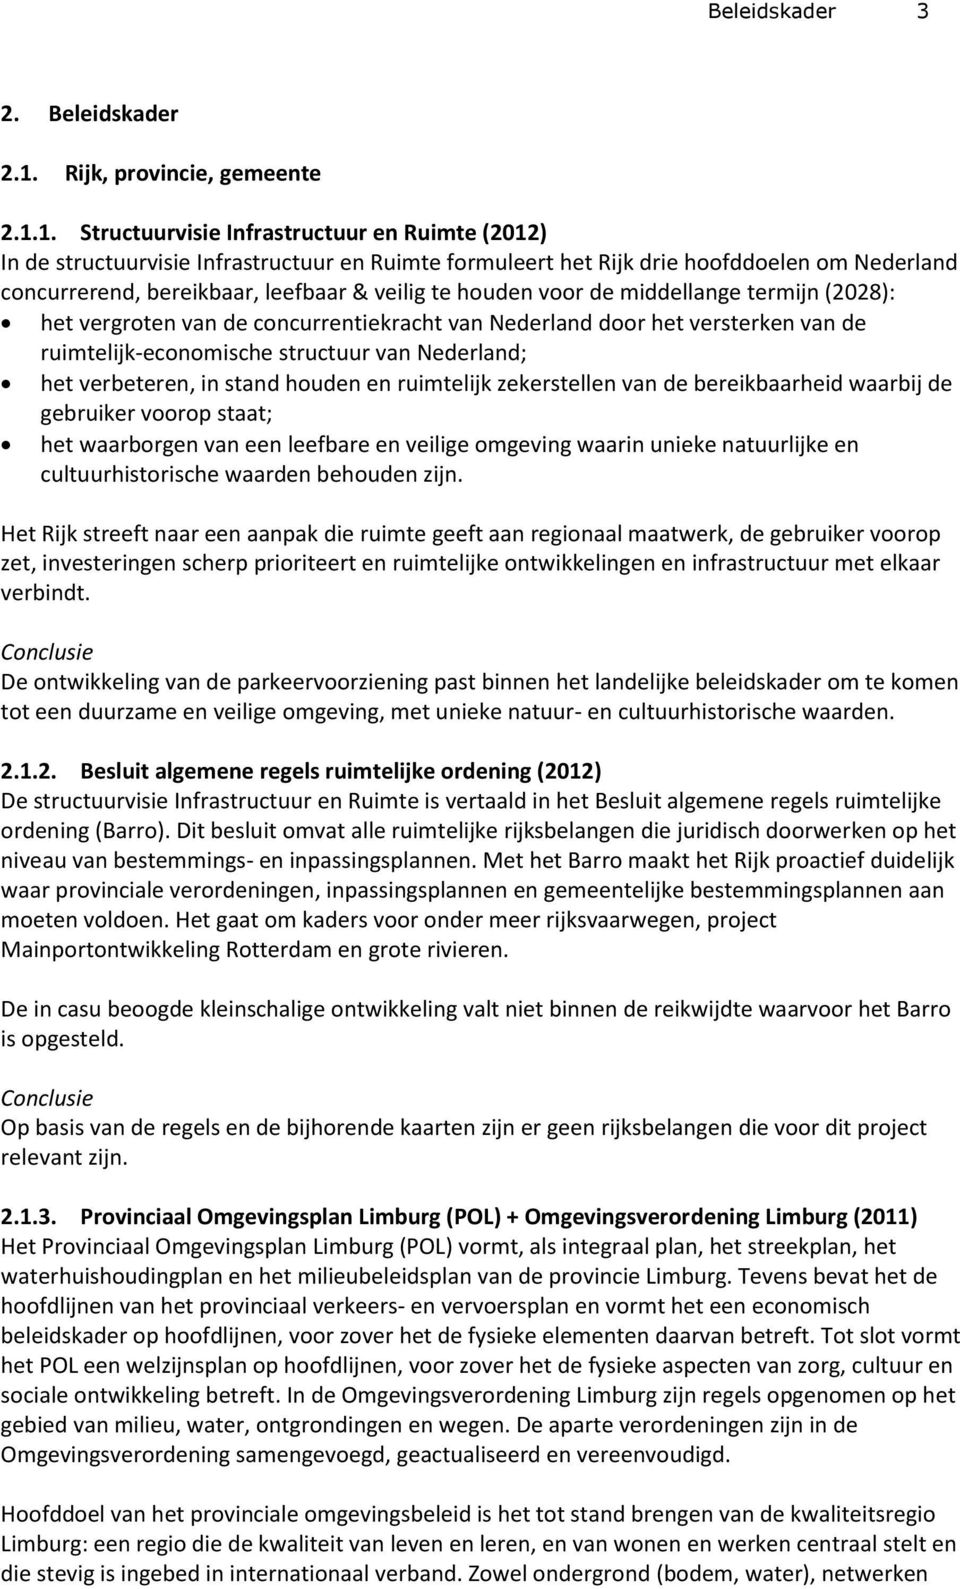 1. Structuurvisie Infrastructuur en Ruimte (2012) In de structuurvisie Infrastructuur en Ruimte formuleert het Rijk drie hoofddoelen om Nederland concurrerend, bereikbaar, leefbaar & veilig te houden